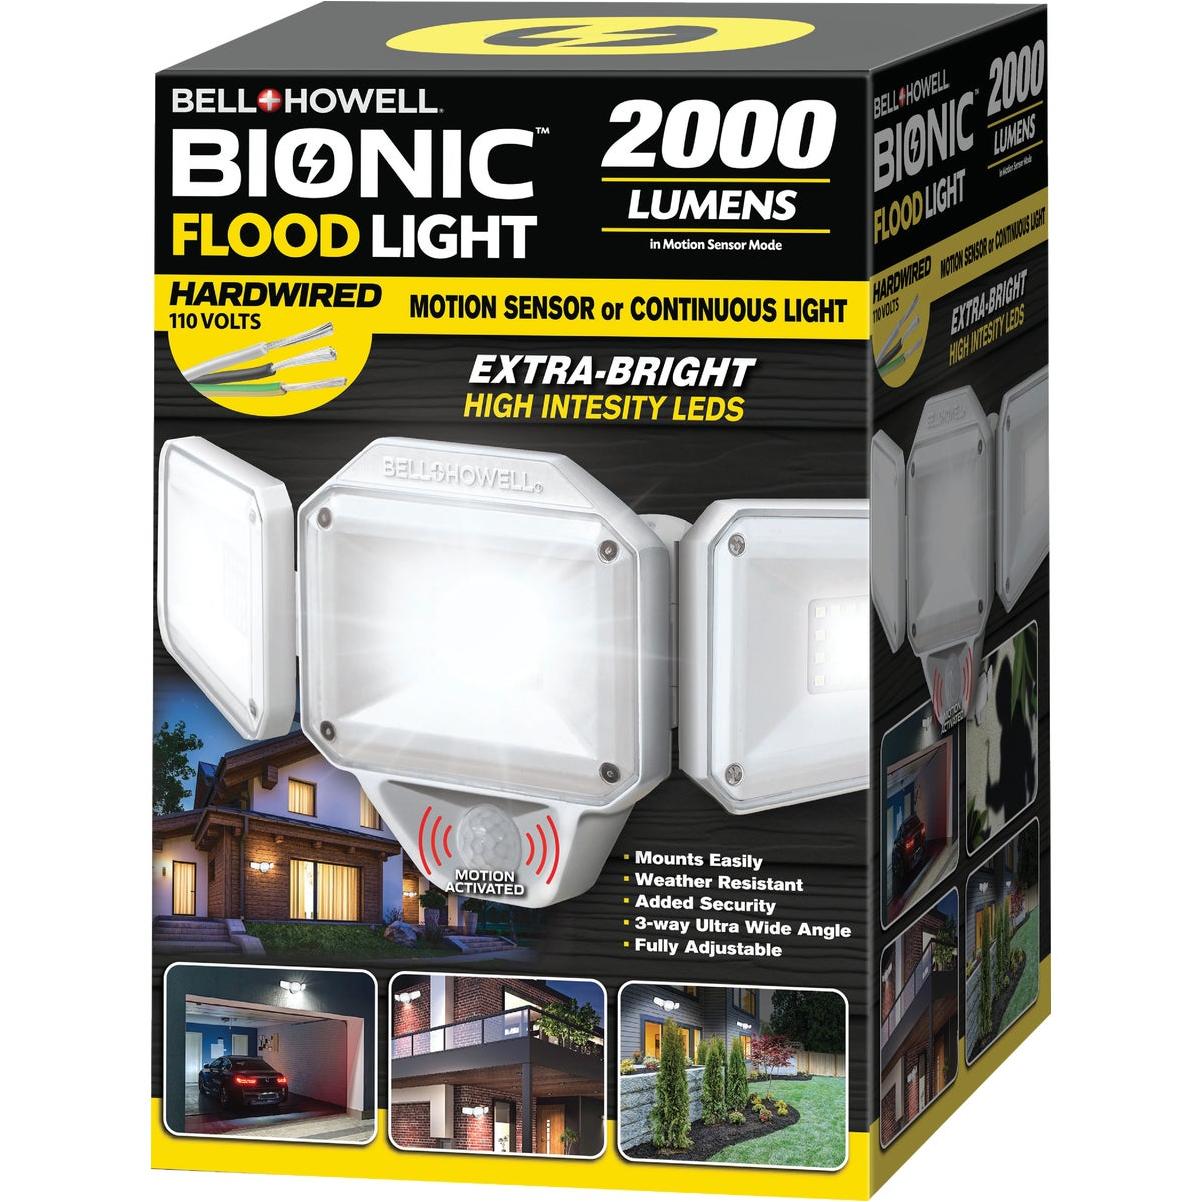 Bell & Howell Bell+Howell Bionic Solar Floodlight | Elitsac, Inc.